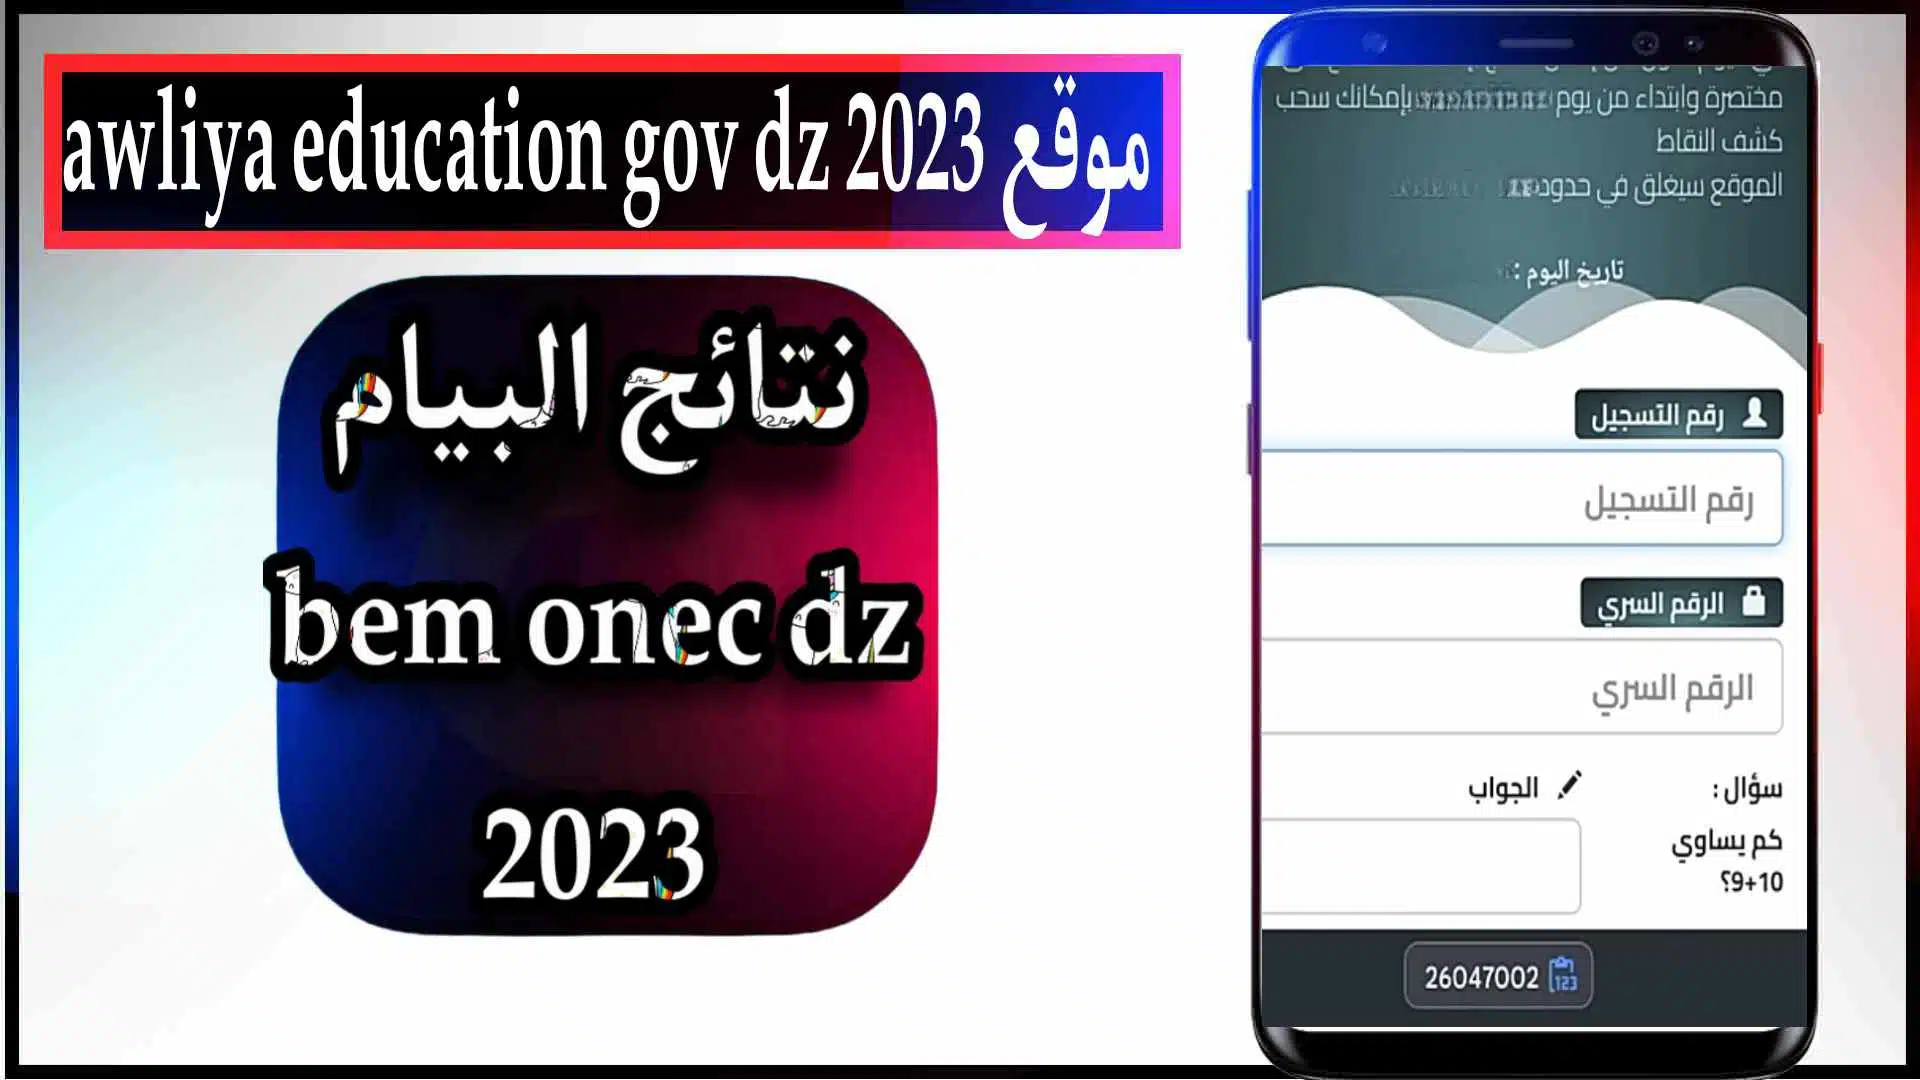 awliya education gov dz 2023 رابط نتائج البيام الموقع الرسمي للاعلان النتائج